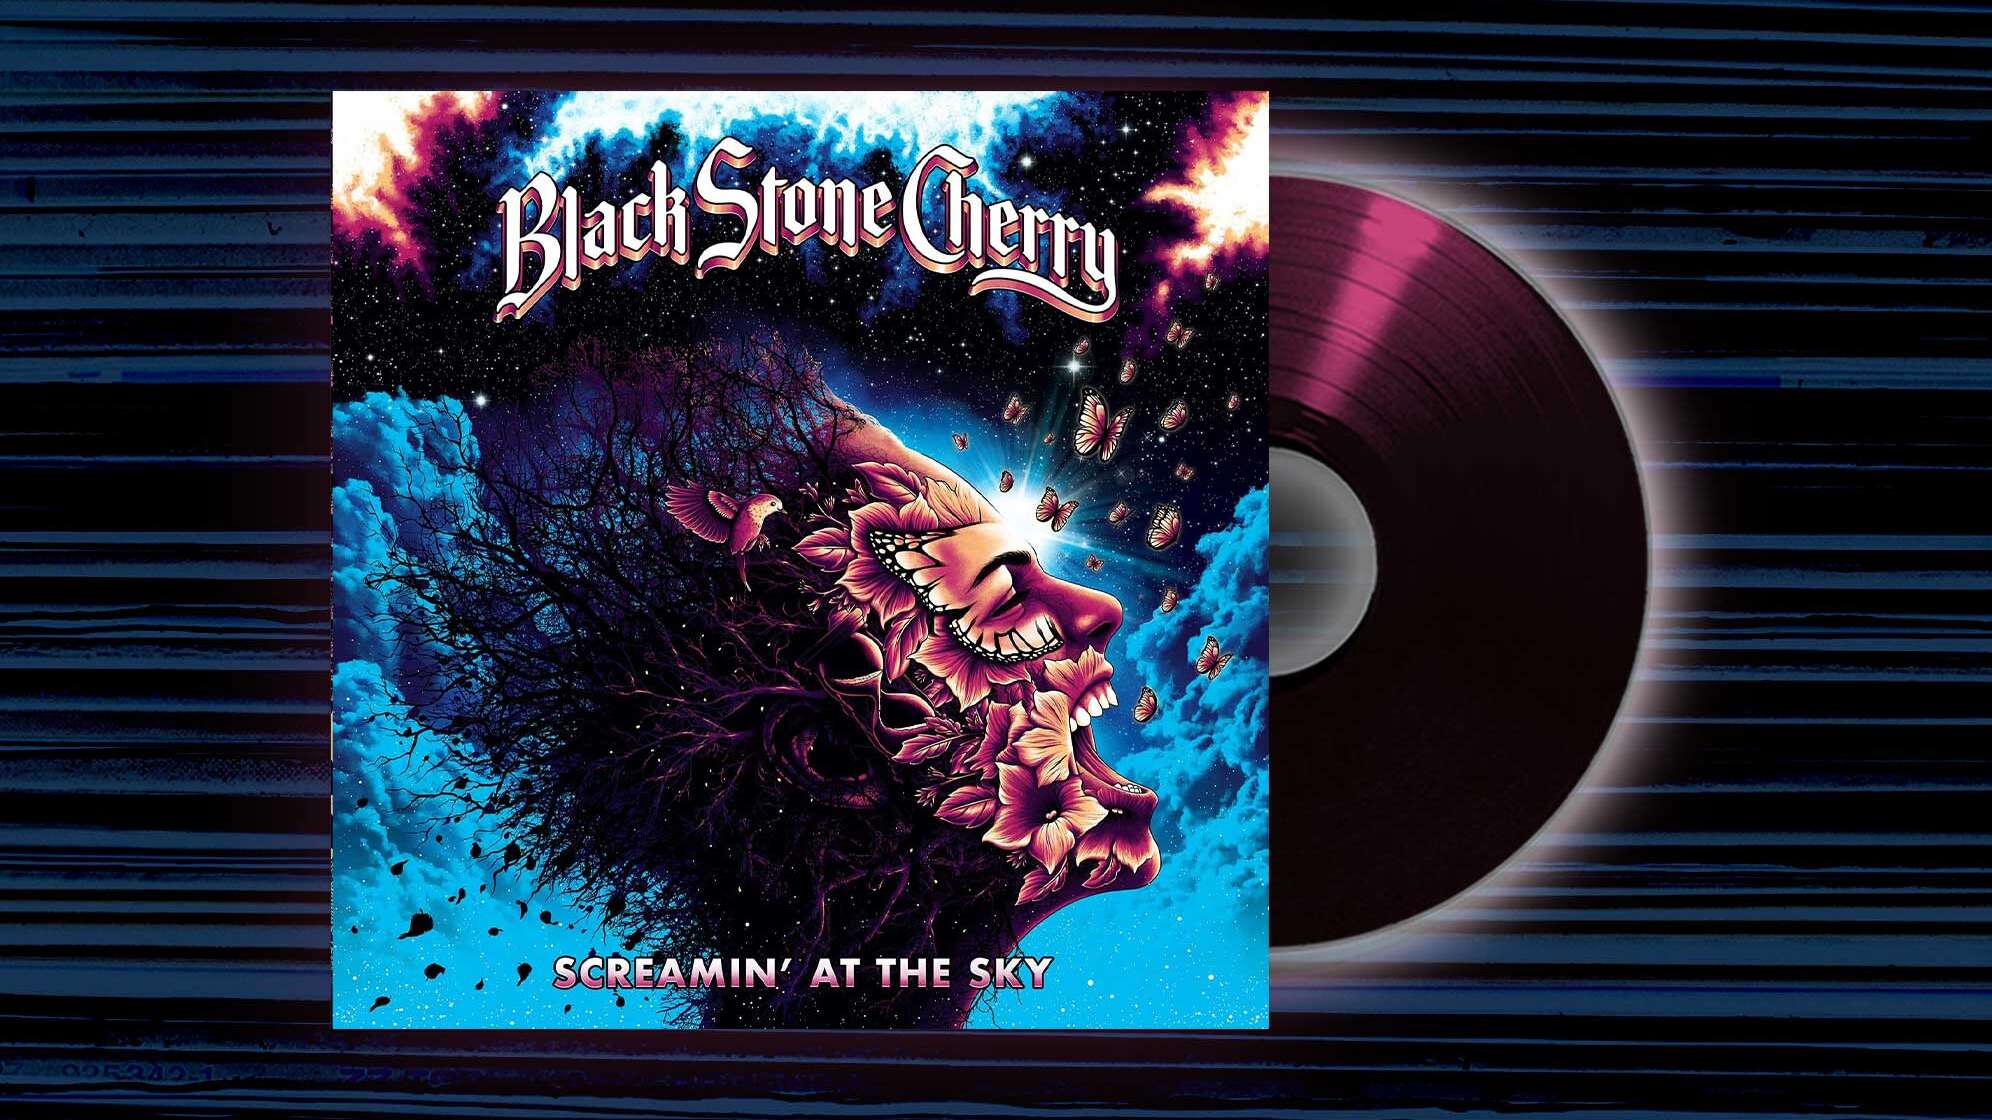 Das Albumcover von Black Stone Cherrys Album "Screamin At The Sky"